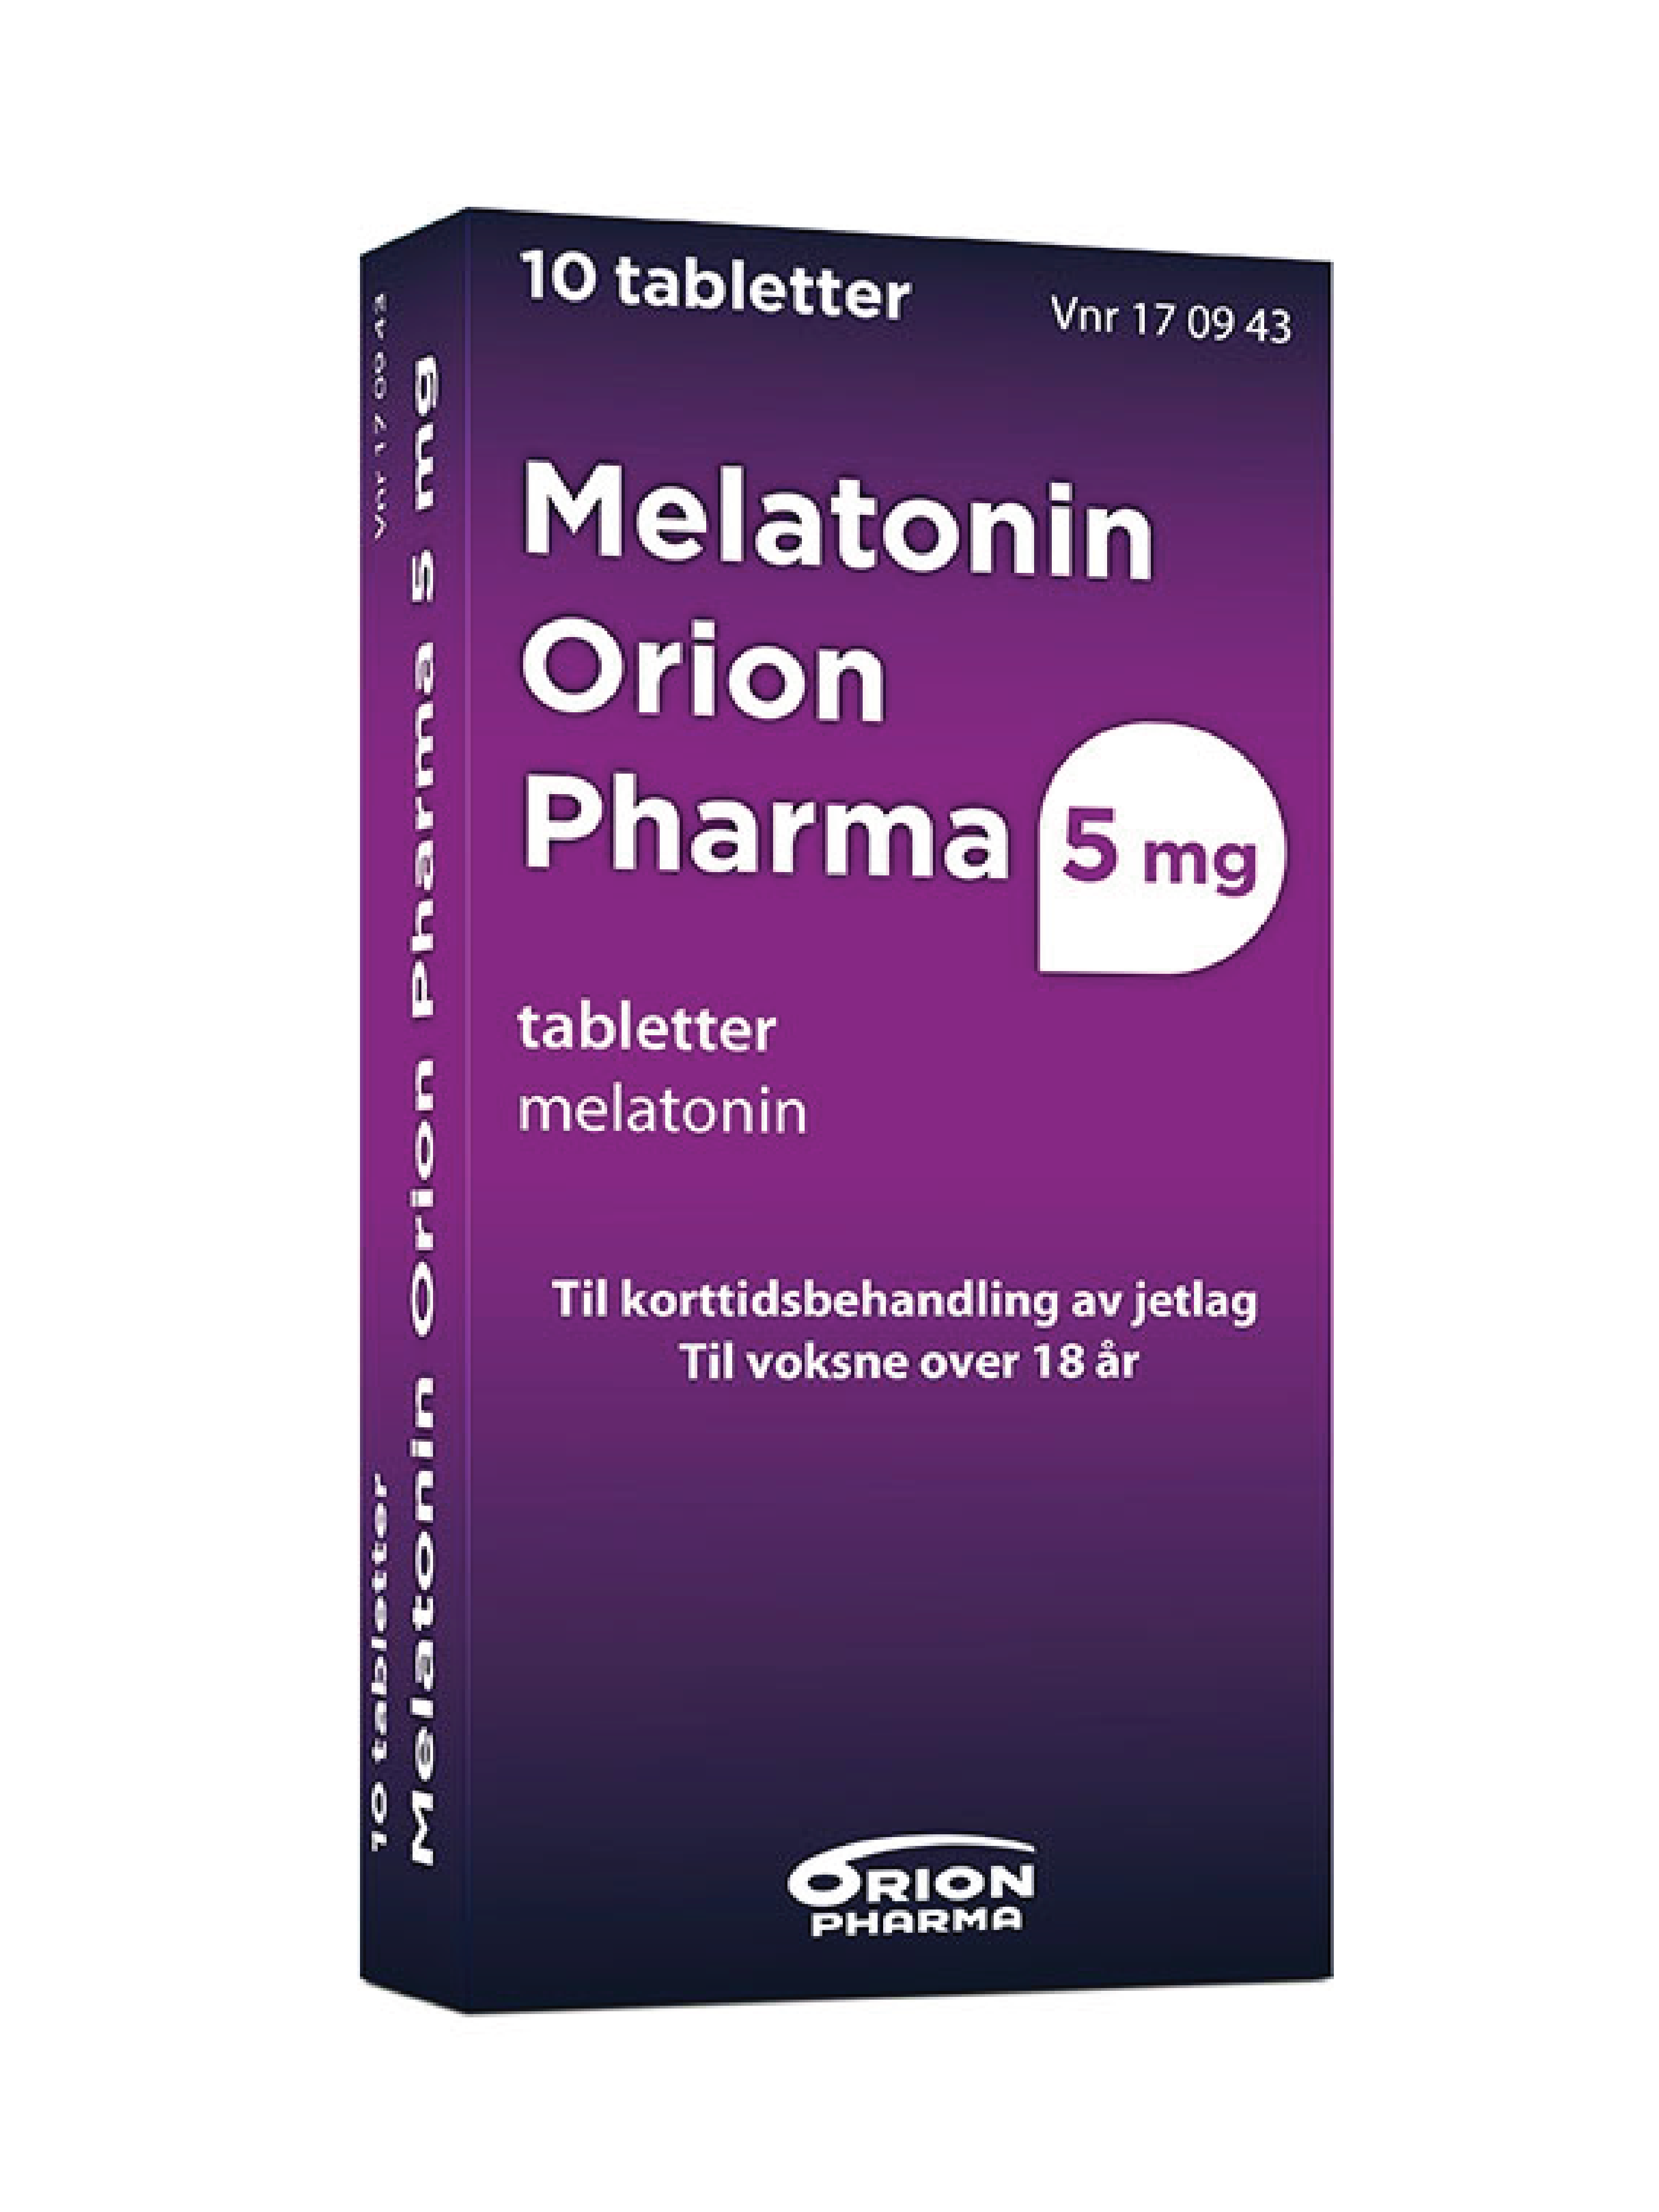 Melatonin Orion Pharma 5 mg tabletter, 10 stk.